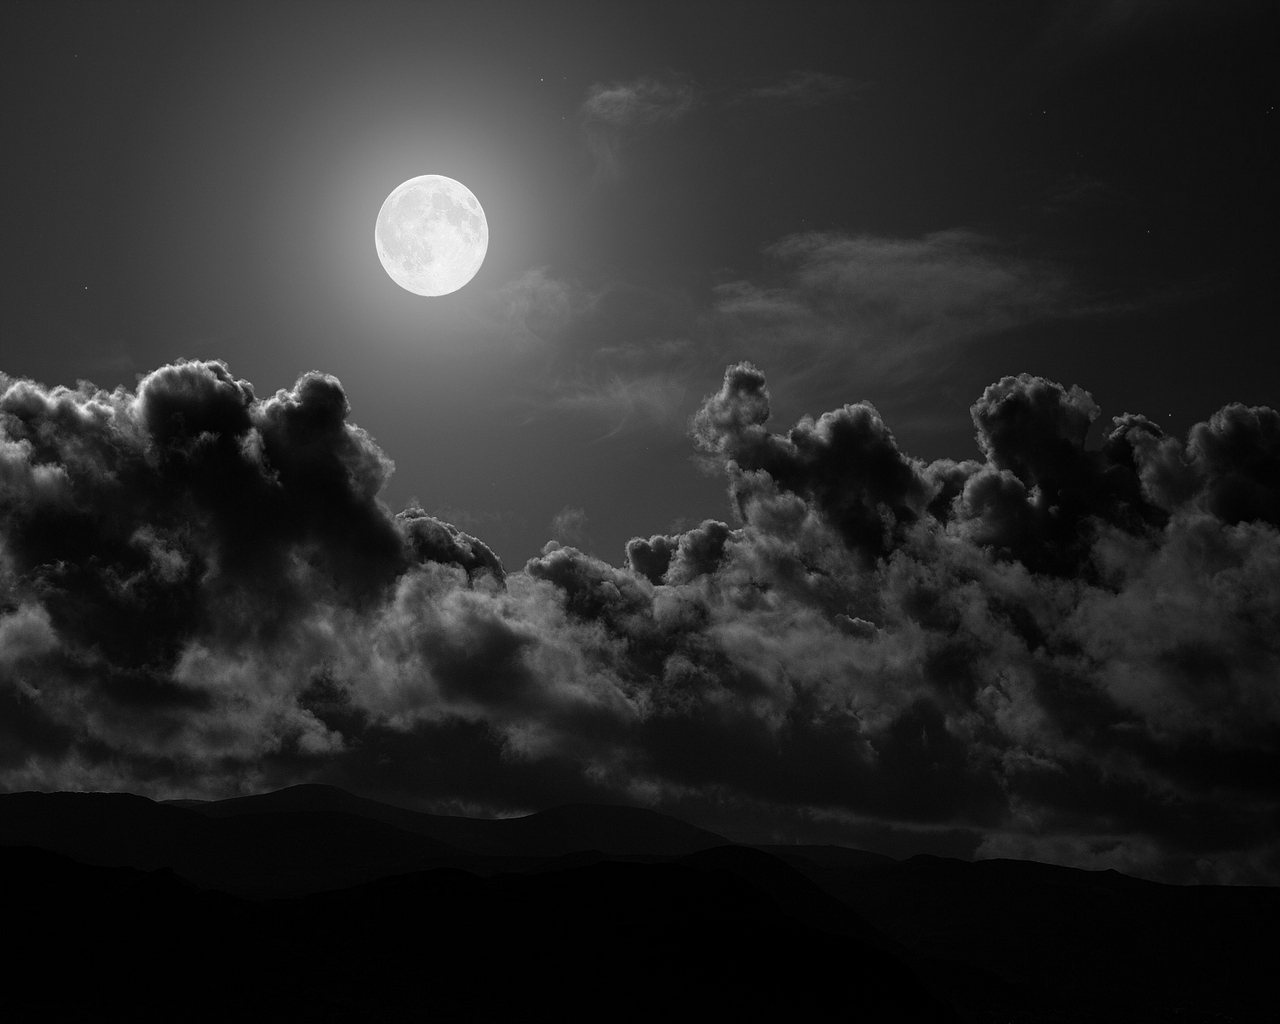 Fond d'ecran Lune nuit